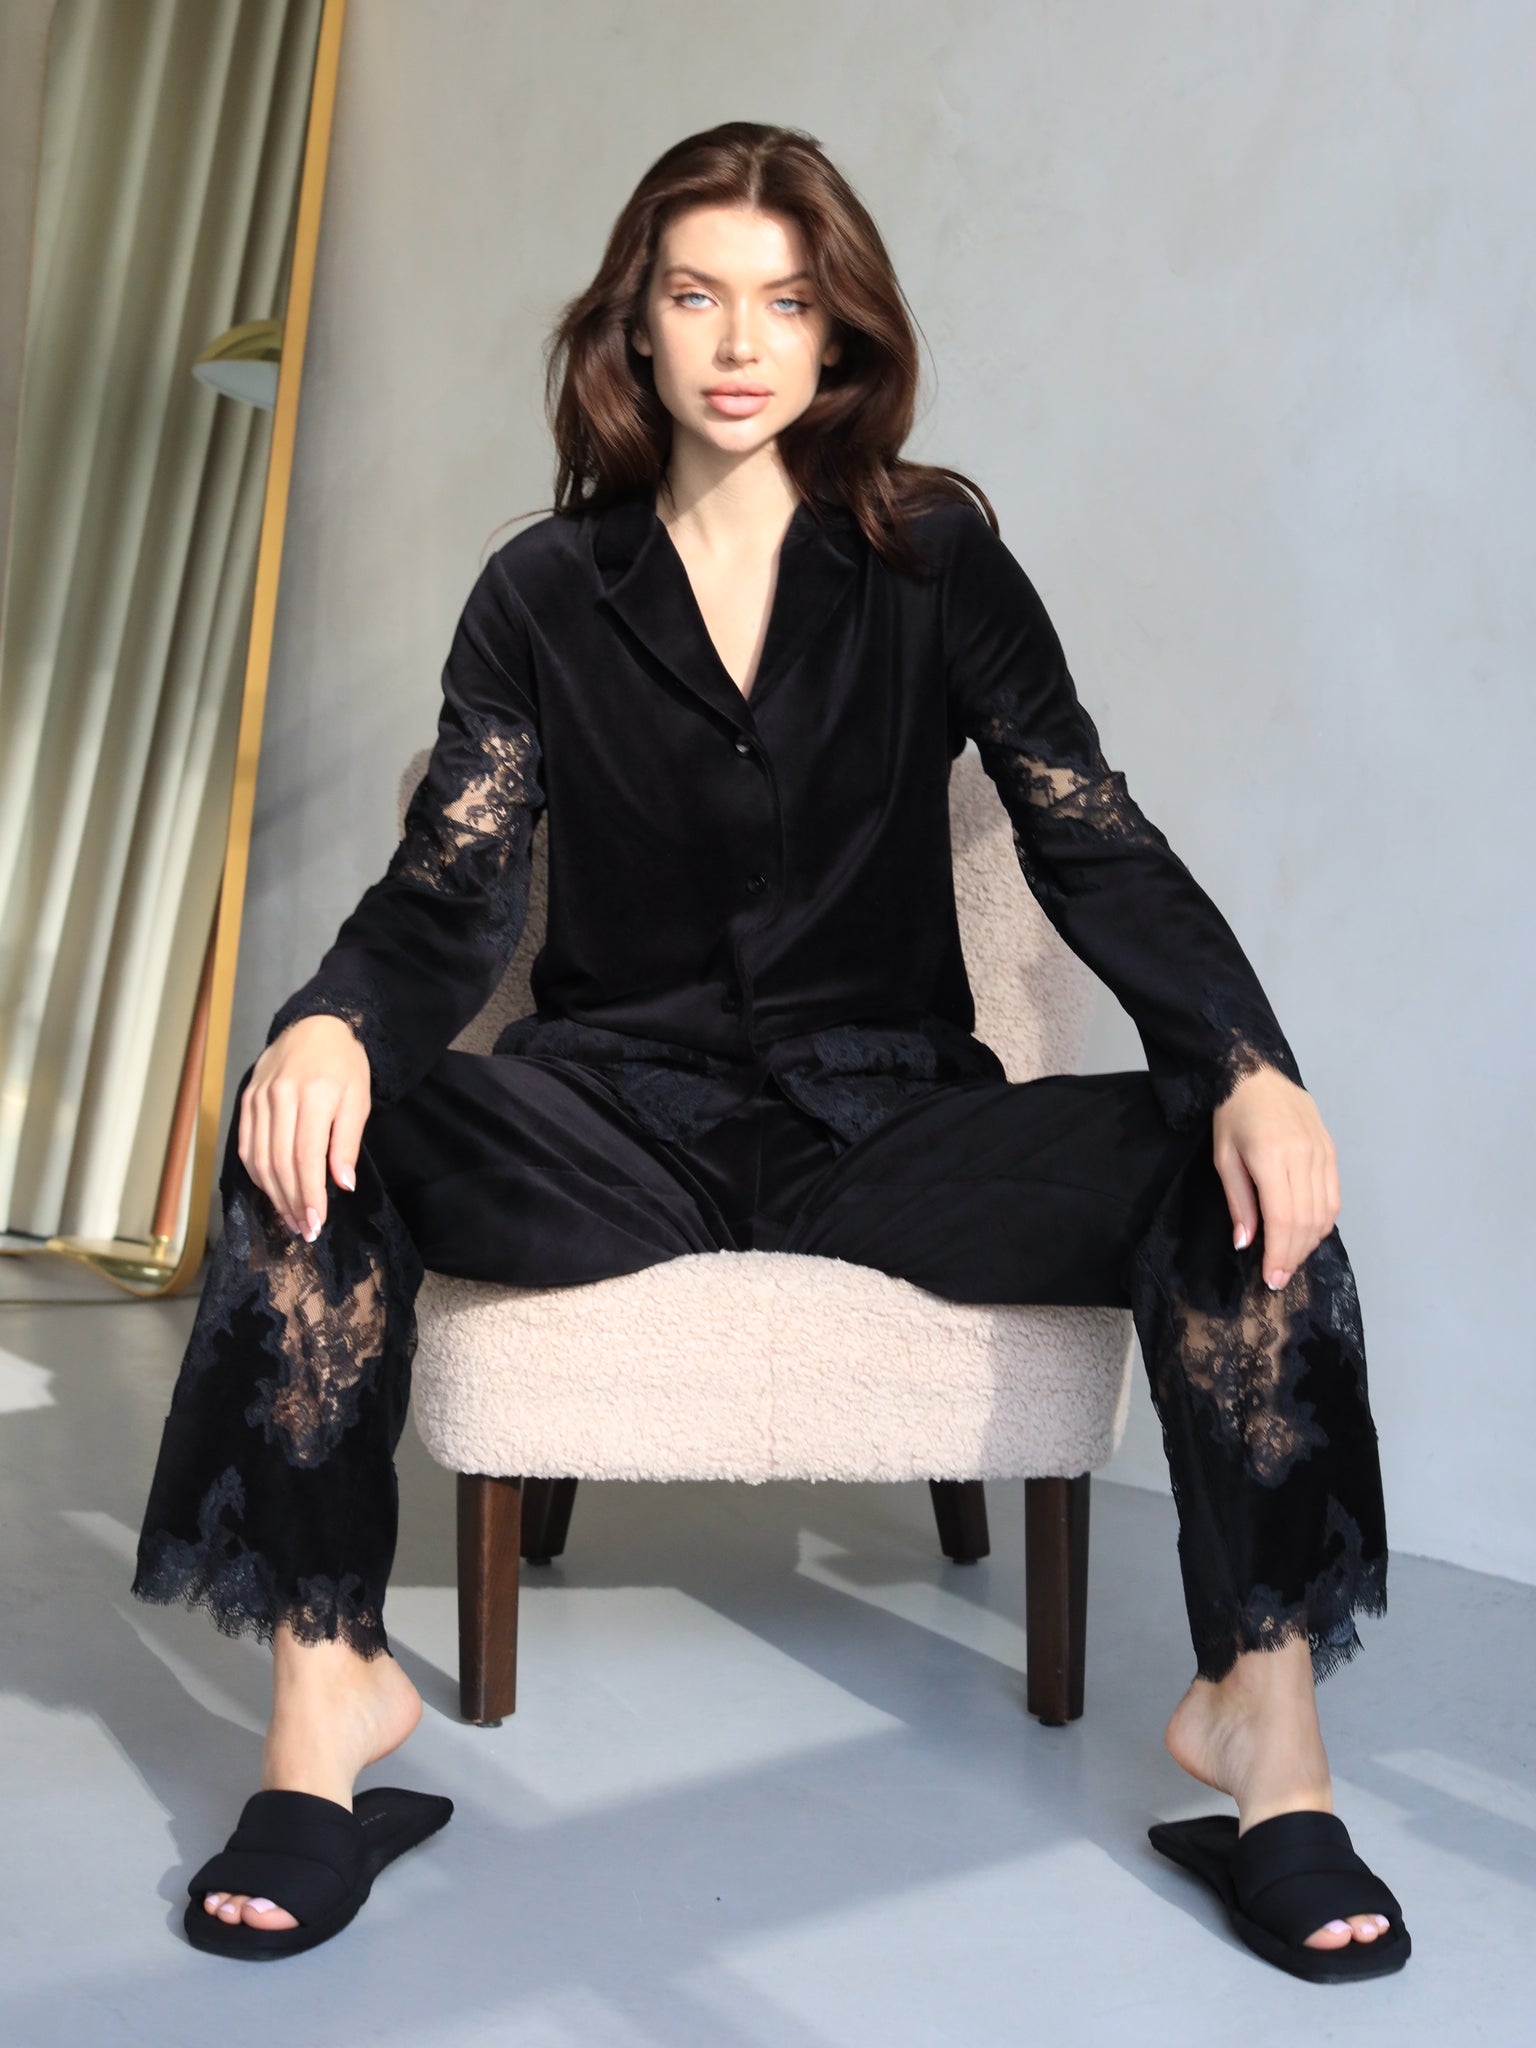 Sofia черный велюровый пижамный костюм